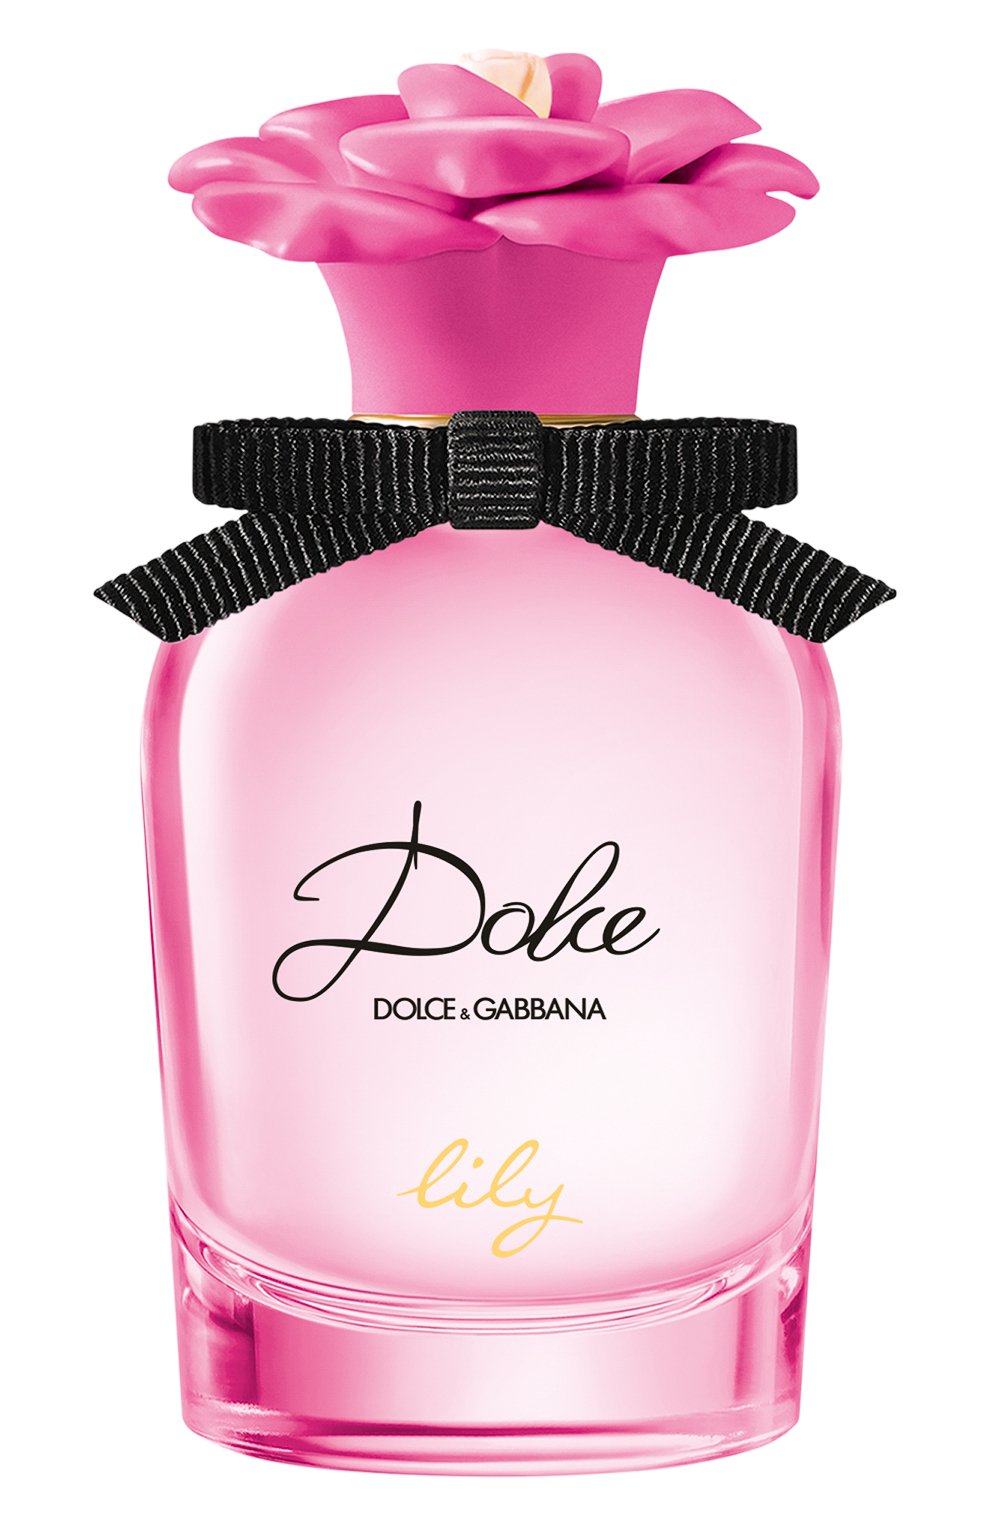 Dolce&Gabbana Dolce Garden парфюмерная вода 30 мл